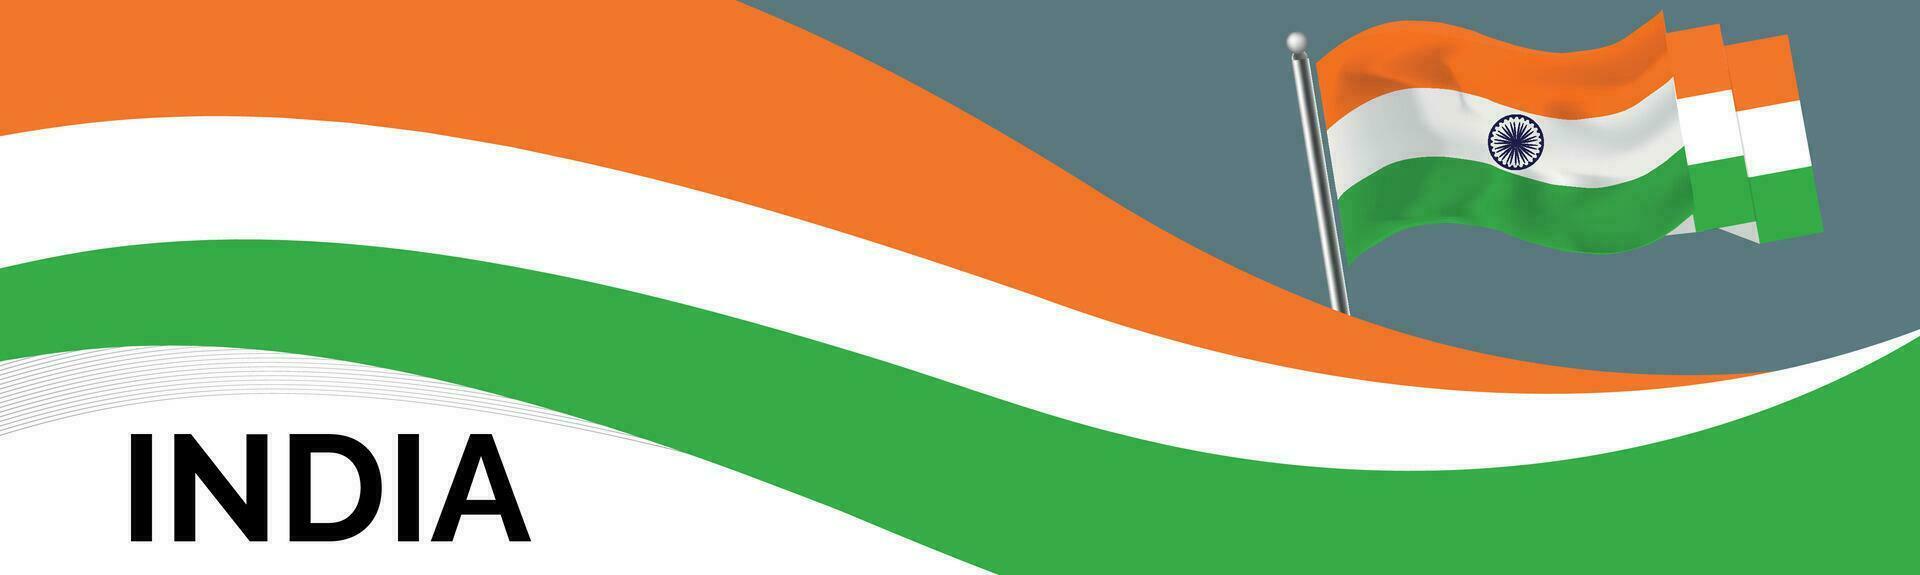 Indien National Tag Banner mit Karte, Flagge Farben Thema Hintergrund und geometrisch abstrakt retro modern bunt Design mit angehoben Hände oder Fäuste vektor